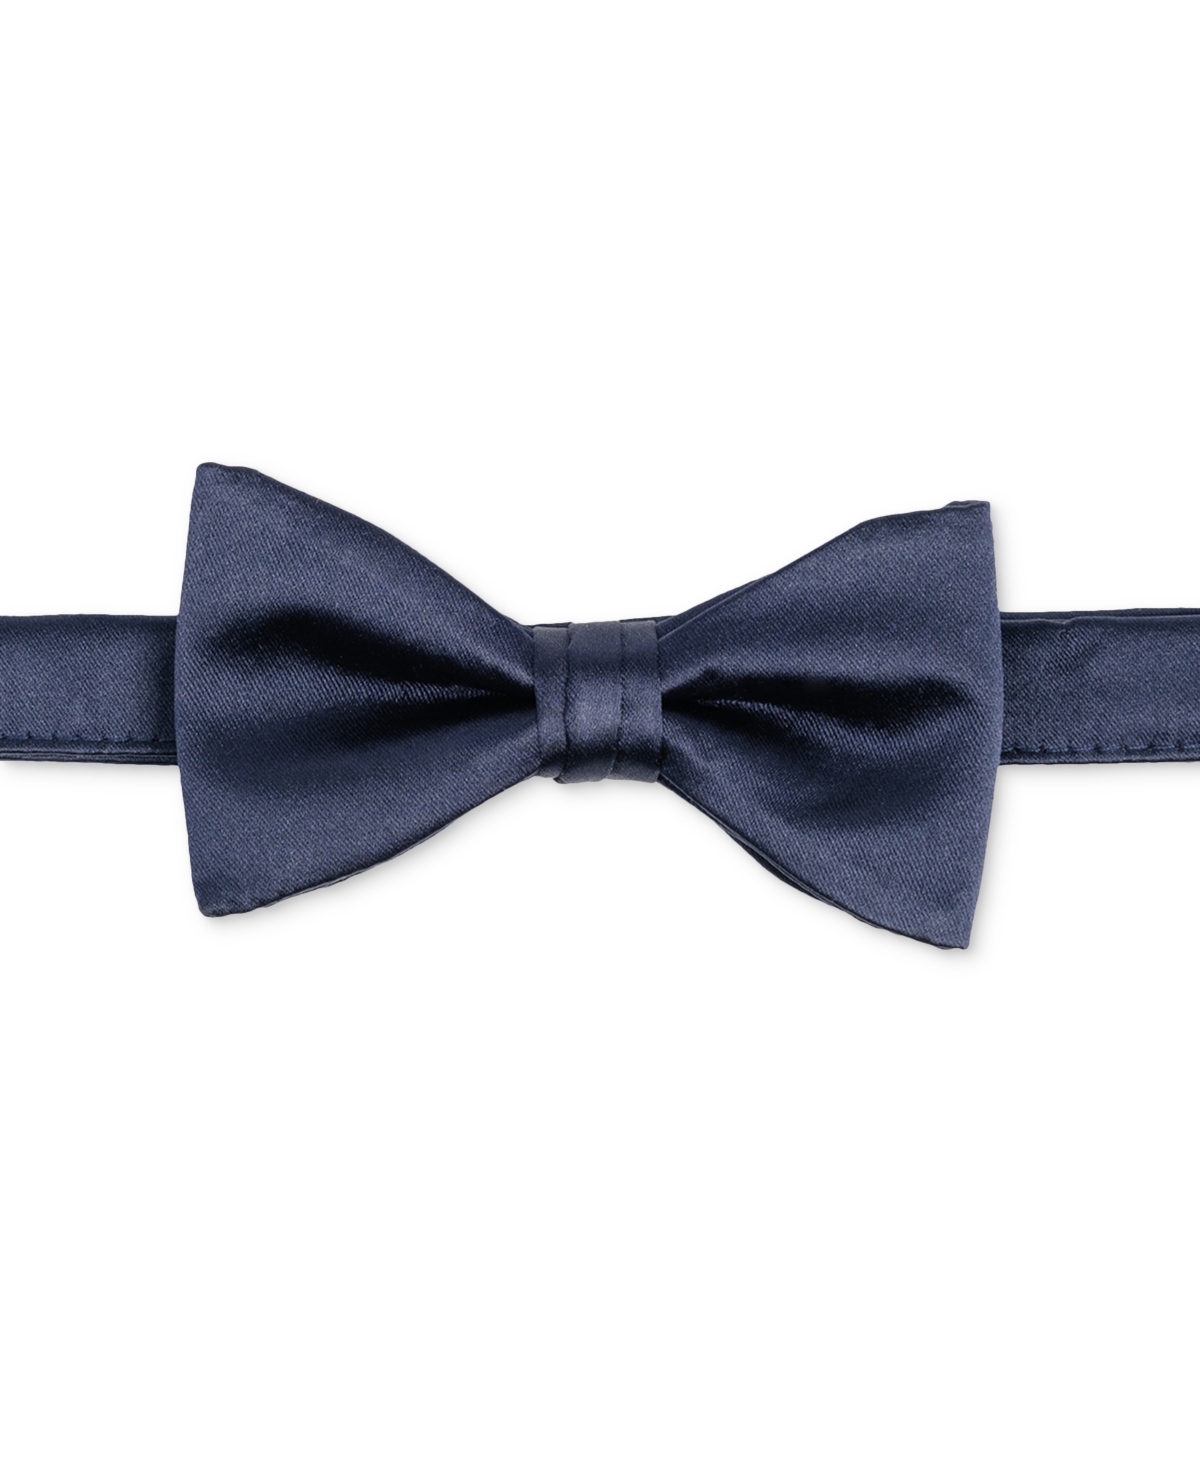 ConStruct Men's Satin Pre-Tied Bow Tie